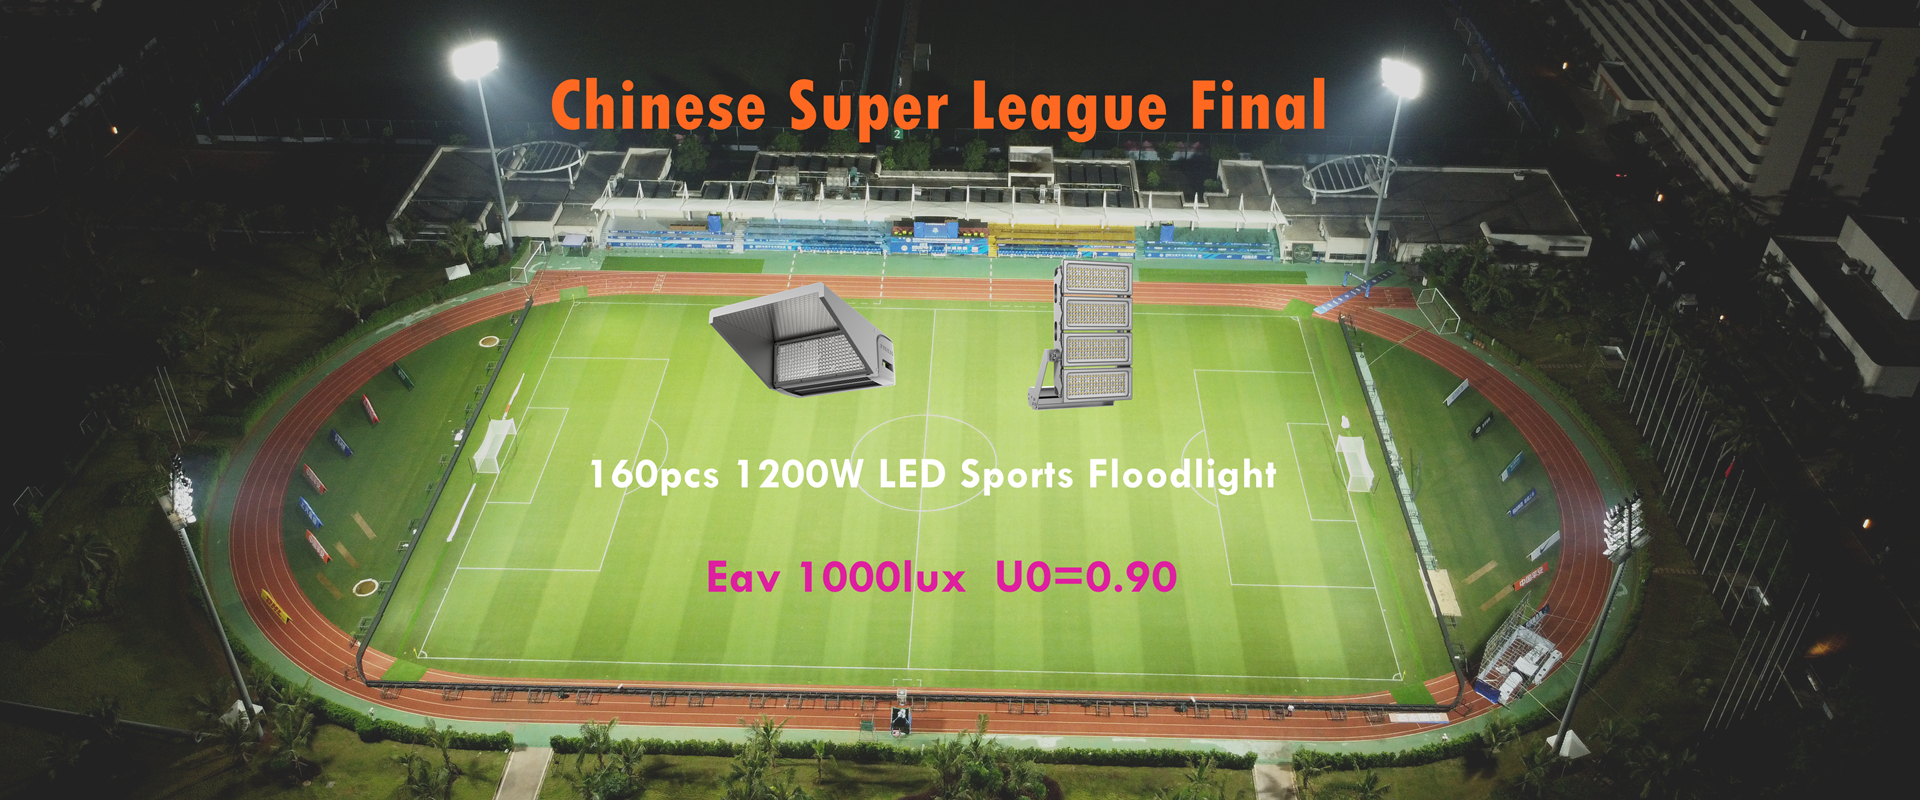 1200W LED sportfloodlight foar Sineeske Super League 2022 yn Haikou fuotbalstadion